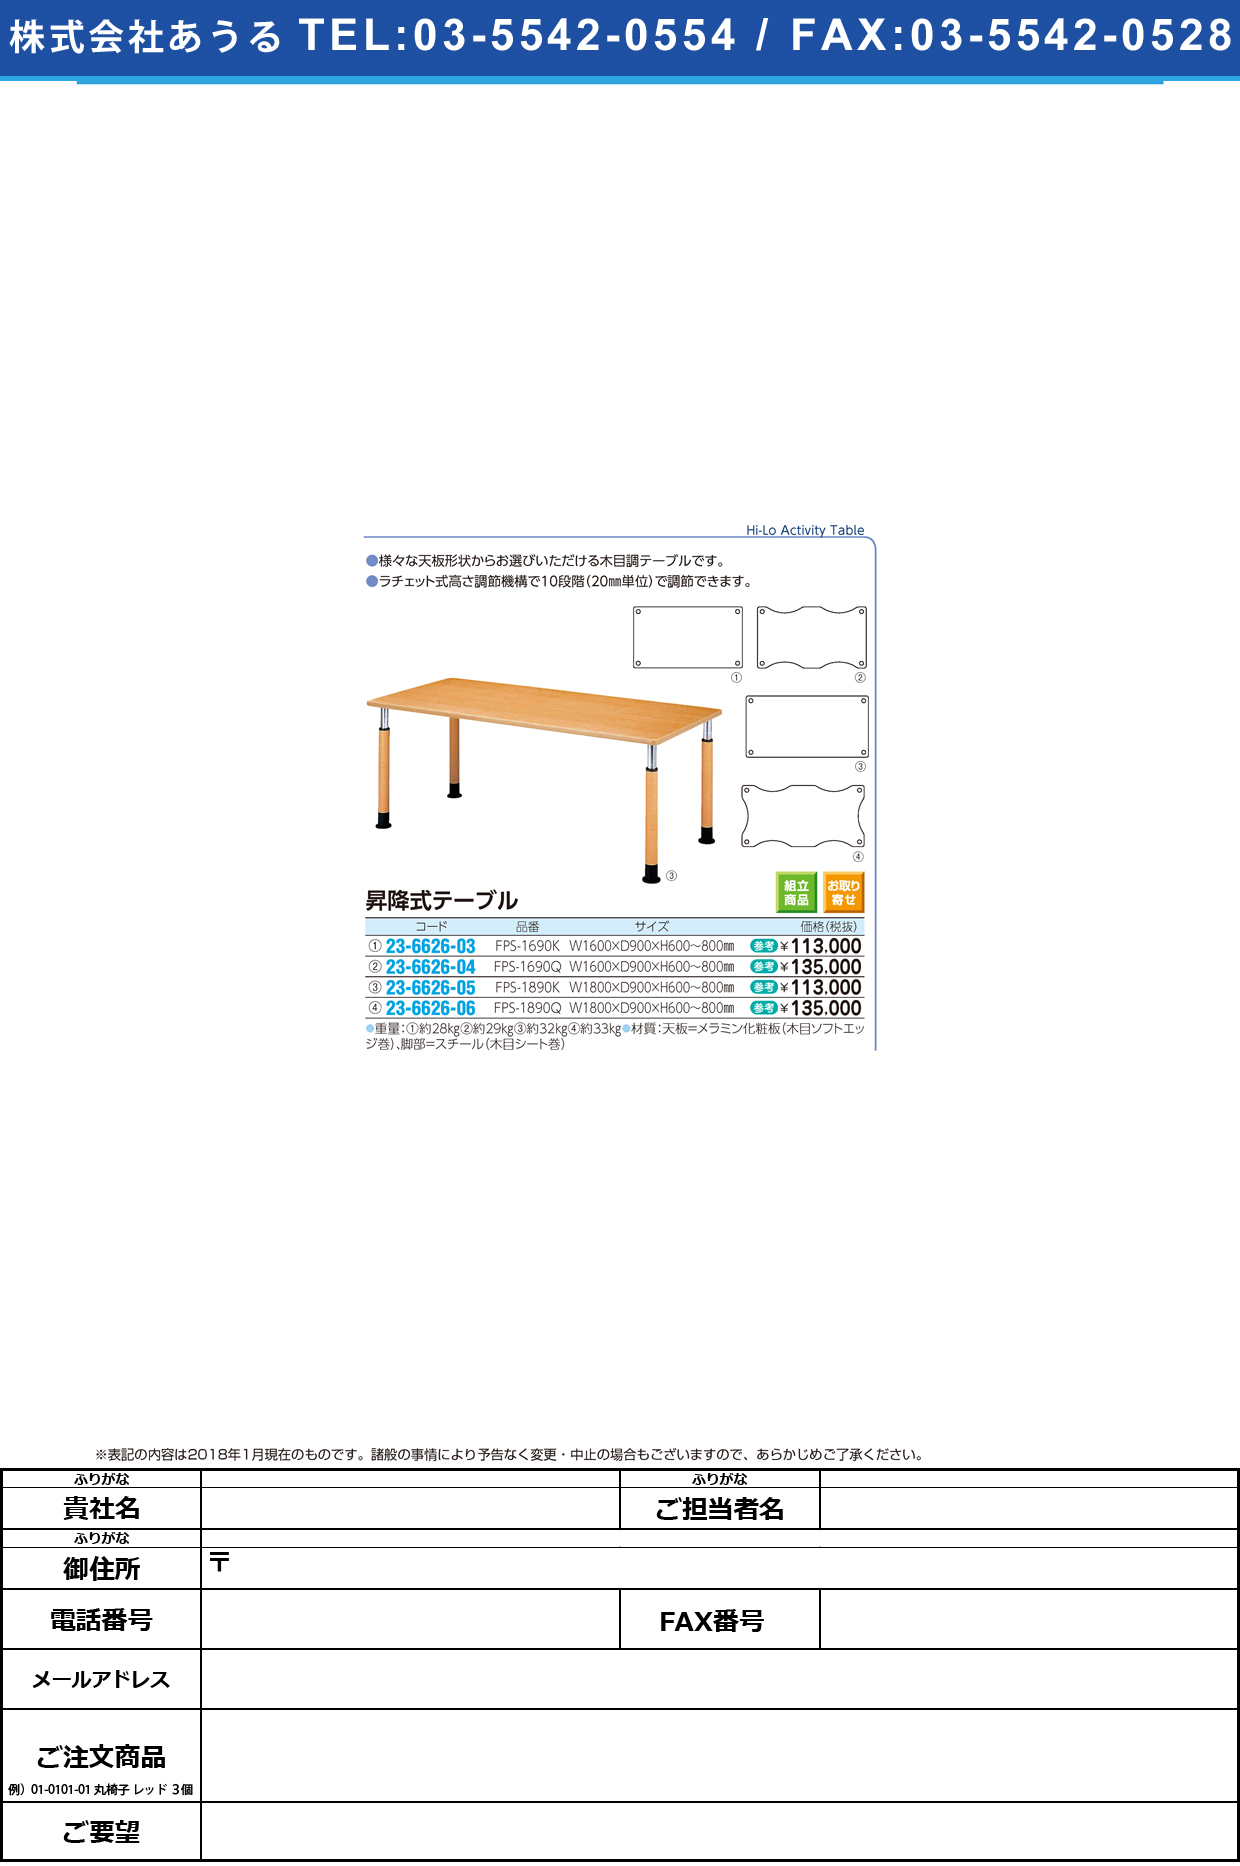 (23-6626-05)昇降式テーブル FPS-1890K(W180XD90CM ｼｮｳｺｳｼｷﾃｰﾌﾞﾙ【1台単位】【2018年カタログ商品】